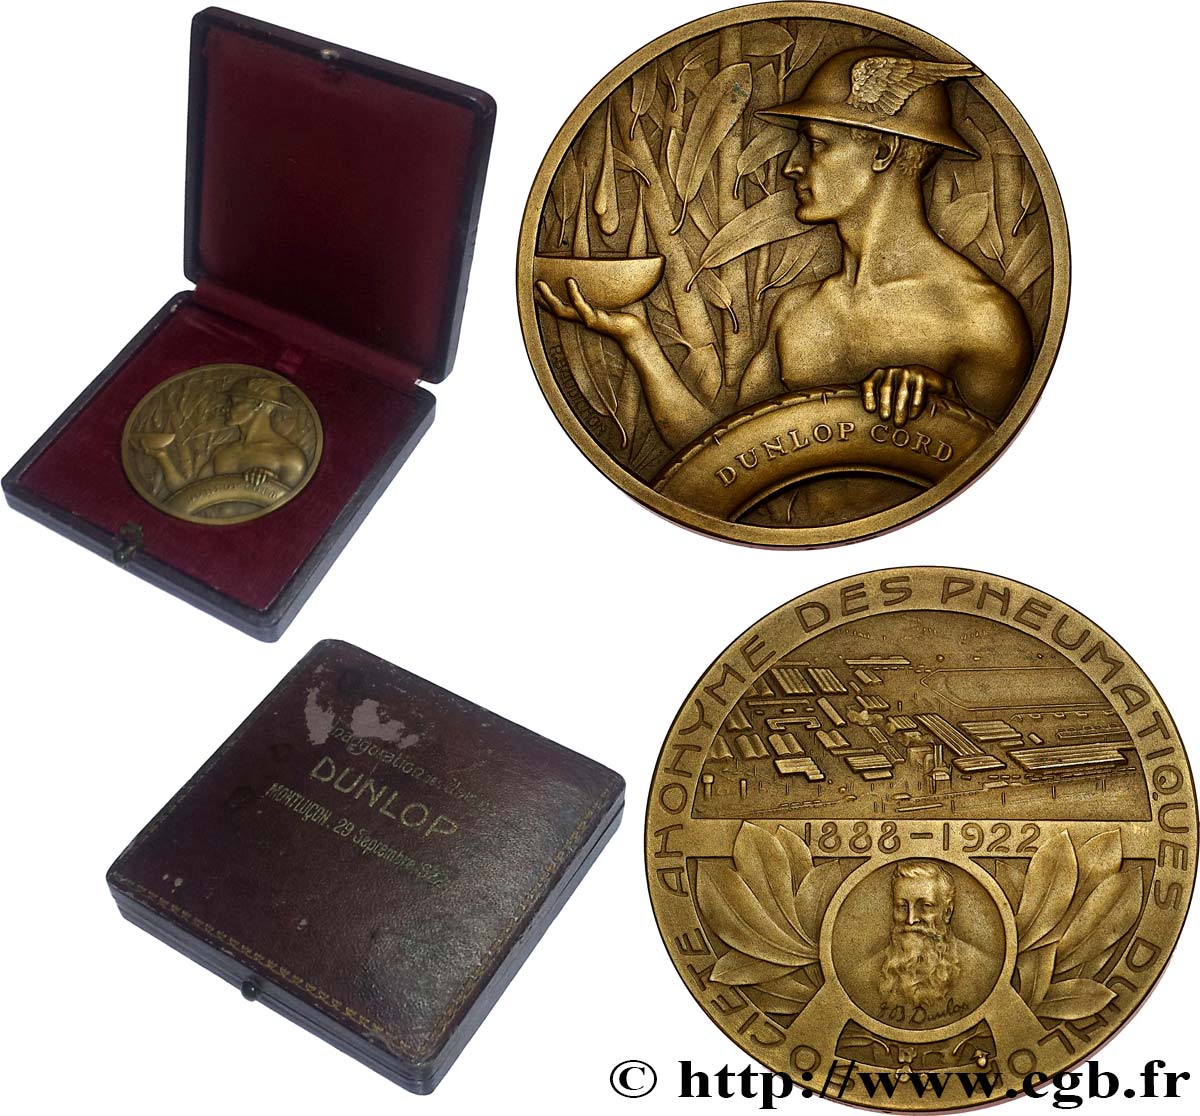 TERCERA REPUBLICA FRANCESA Médaille, John Boyd Dunlop, Société anonyme des pneumatiques, Inauguration des usines MBC+